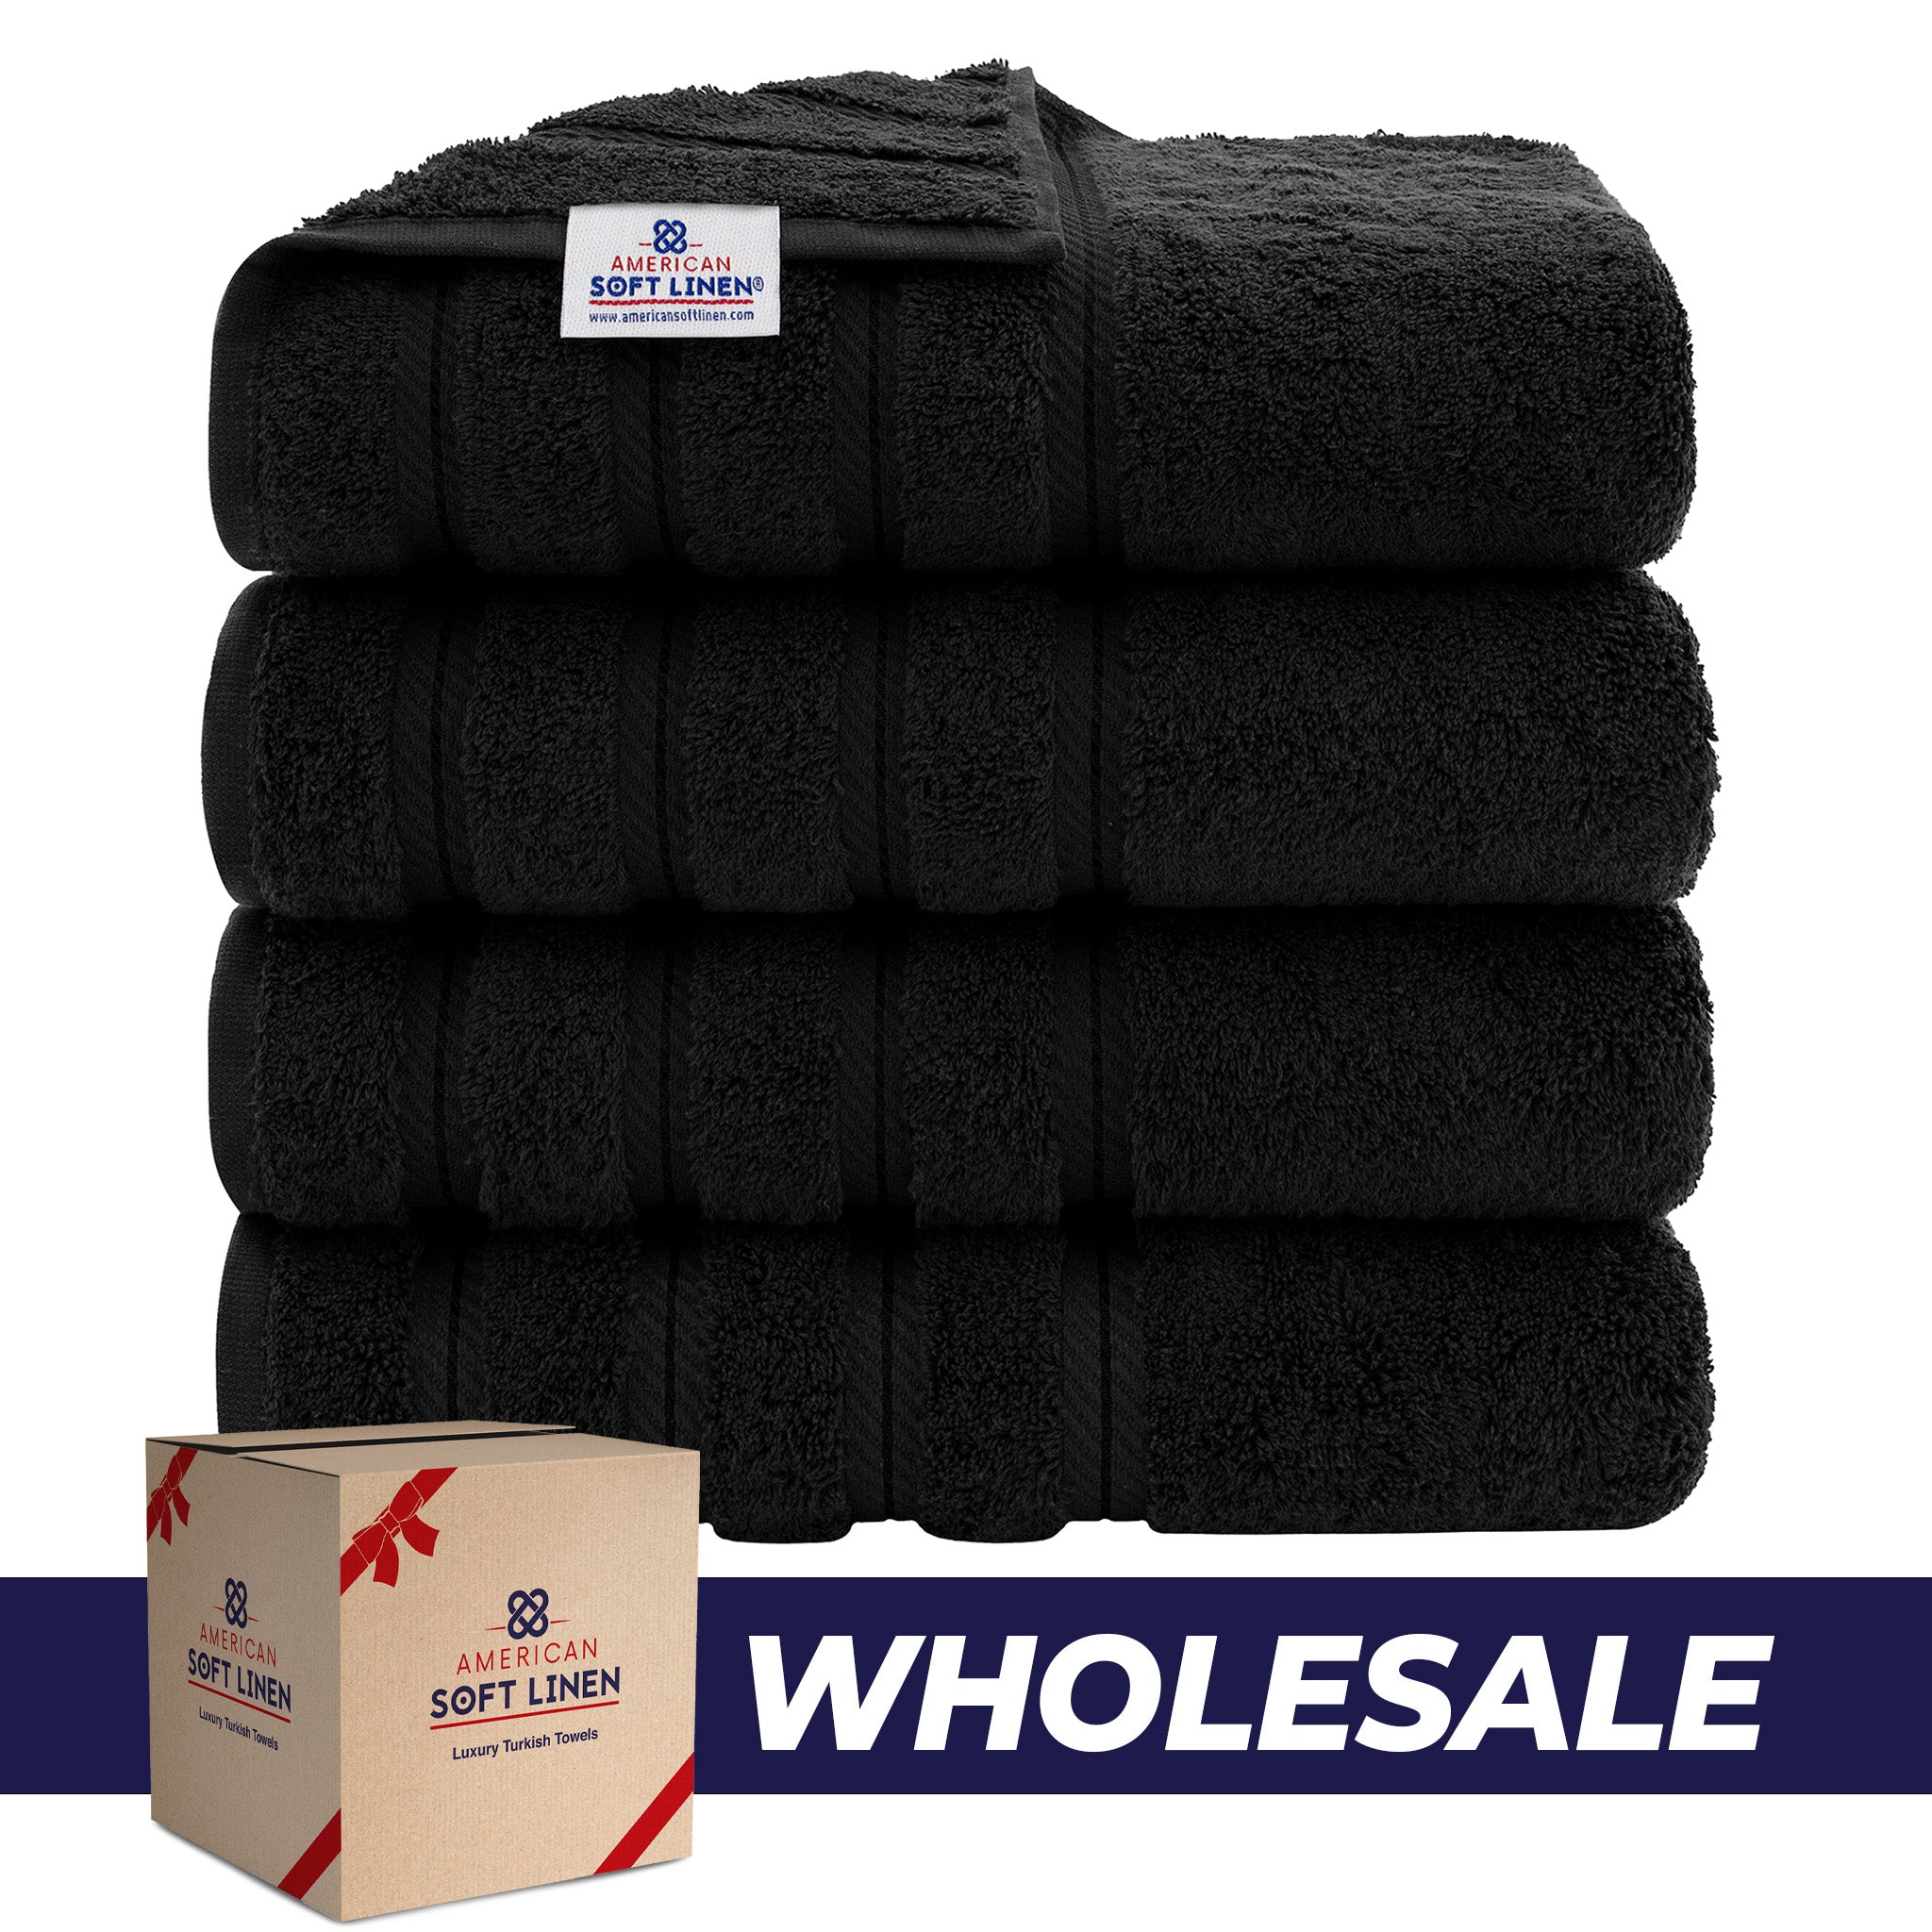 American Soft Linen 100% Turkish Cotton 4 Pack Bath Towel Set Wholesale black-0